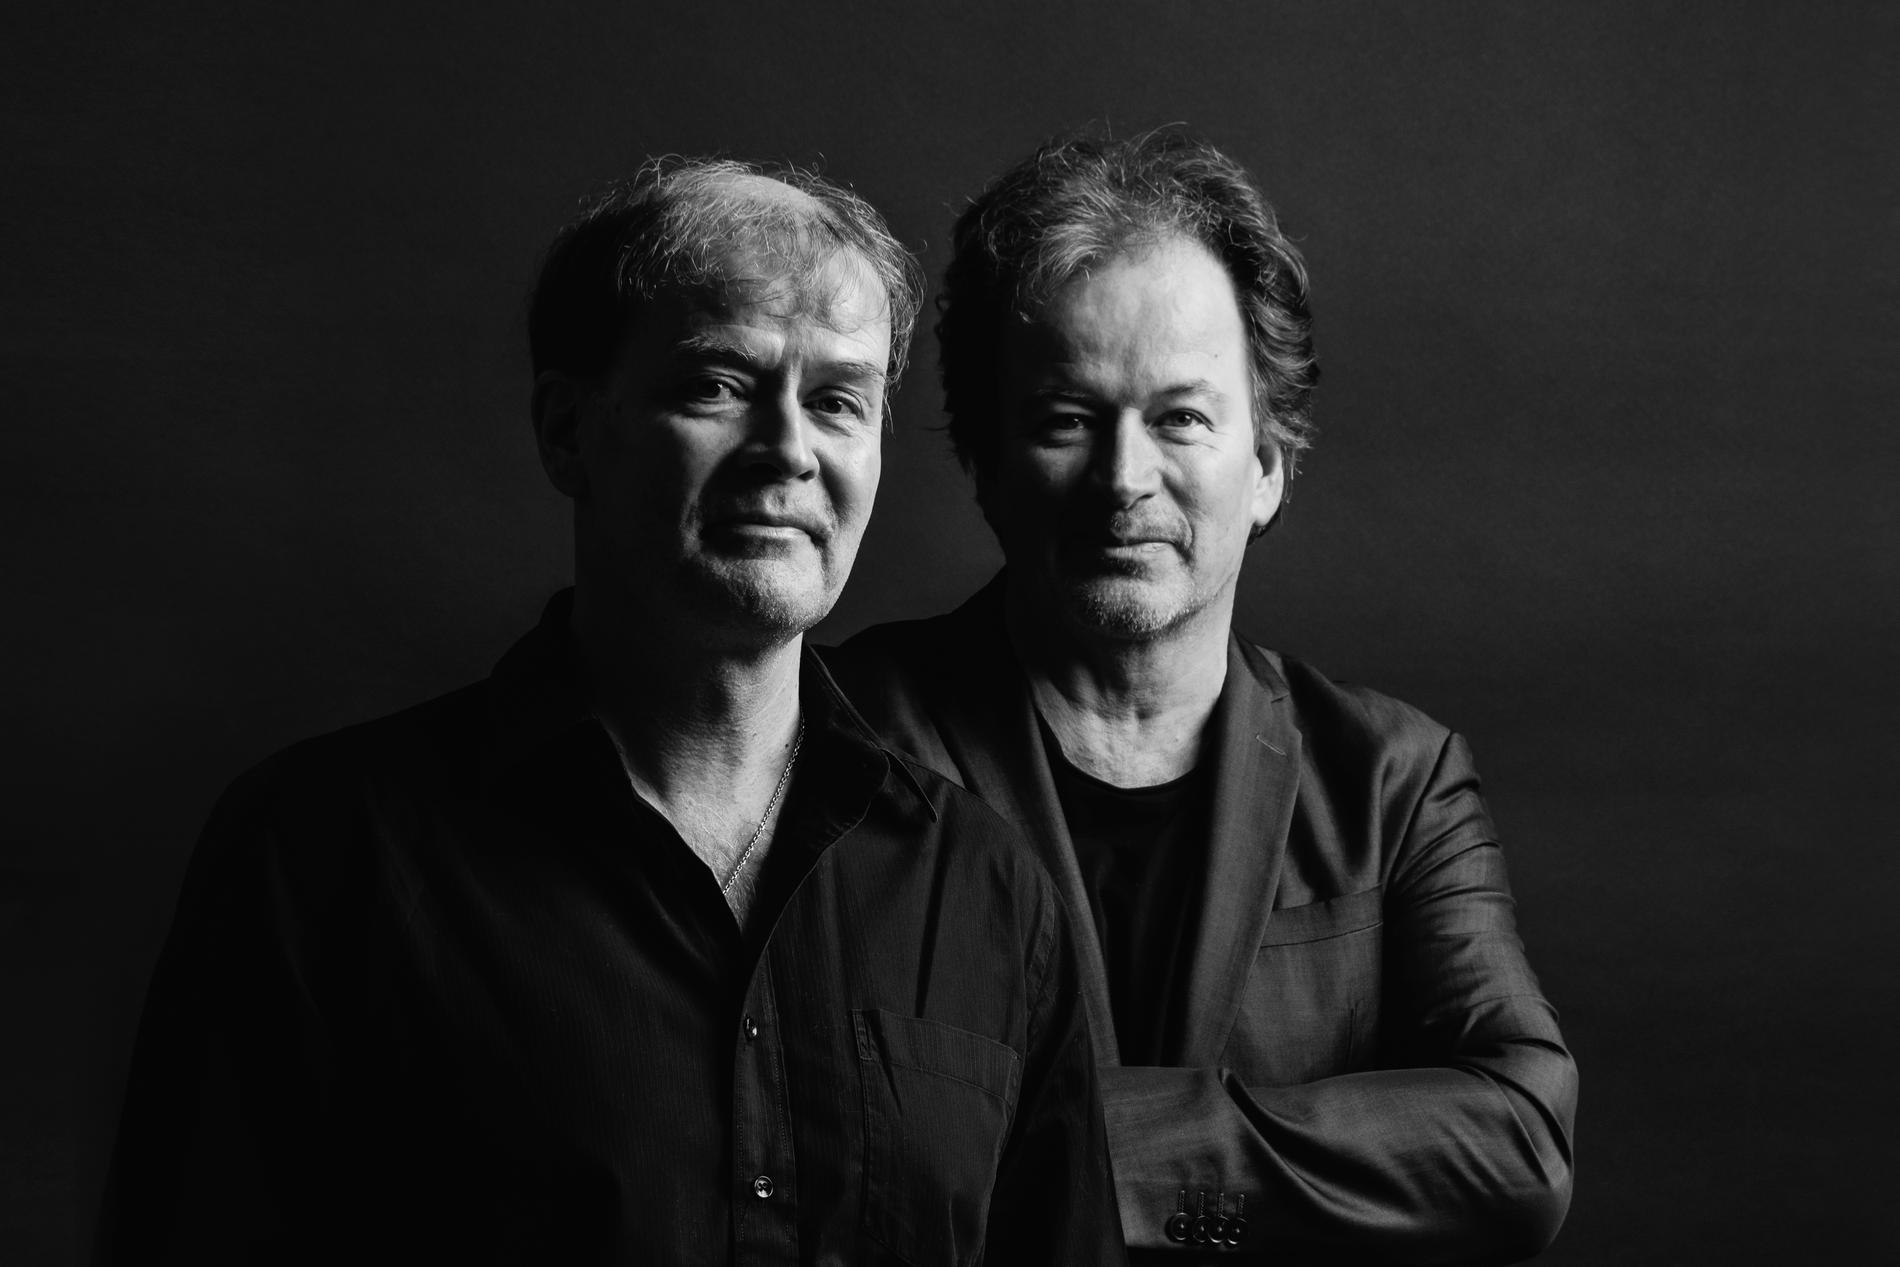 Finländska författarbröderna Mårten och Kjell Westö skriver självbiografiskt i ”Åren”.